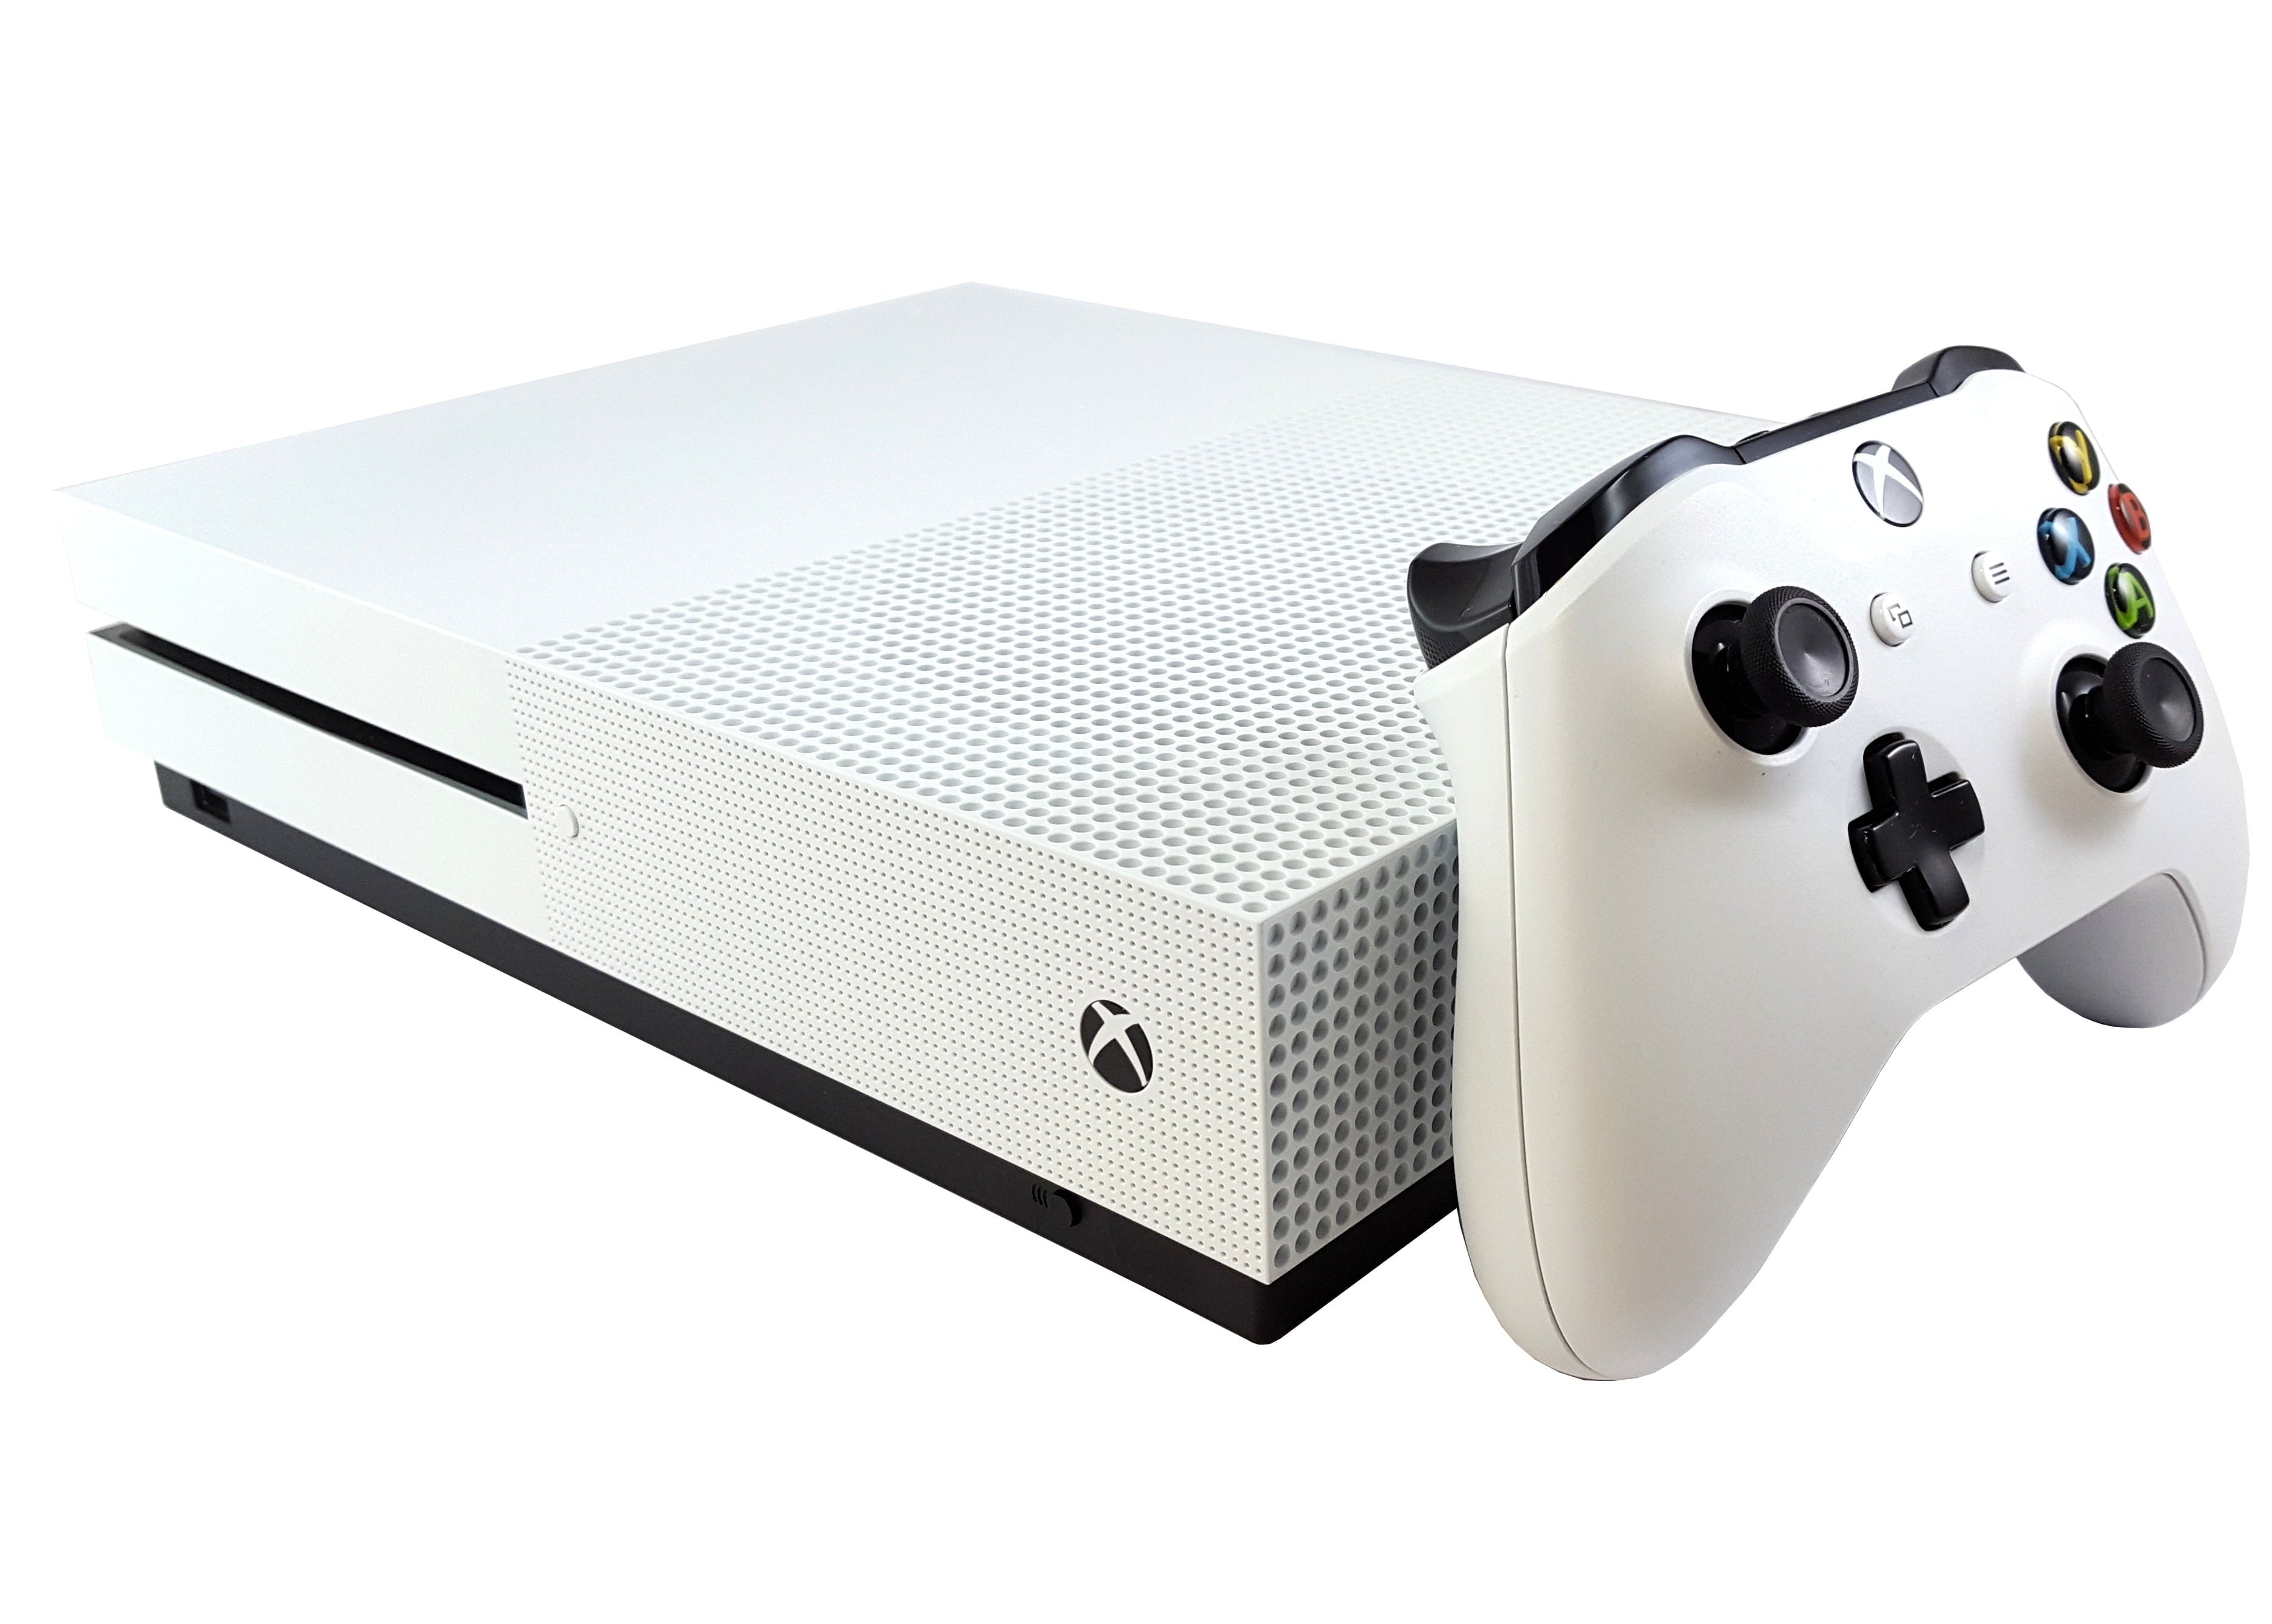 Xbox One S 500GB Console - White